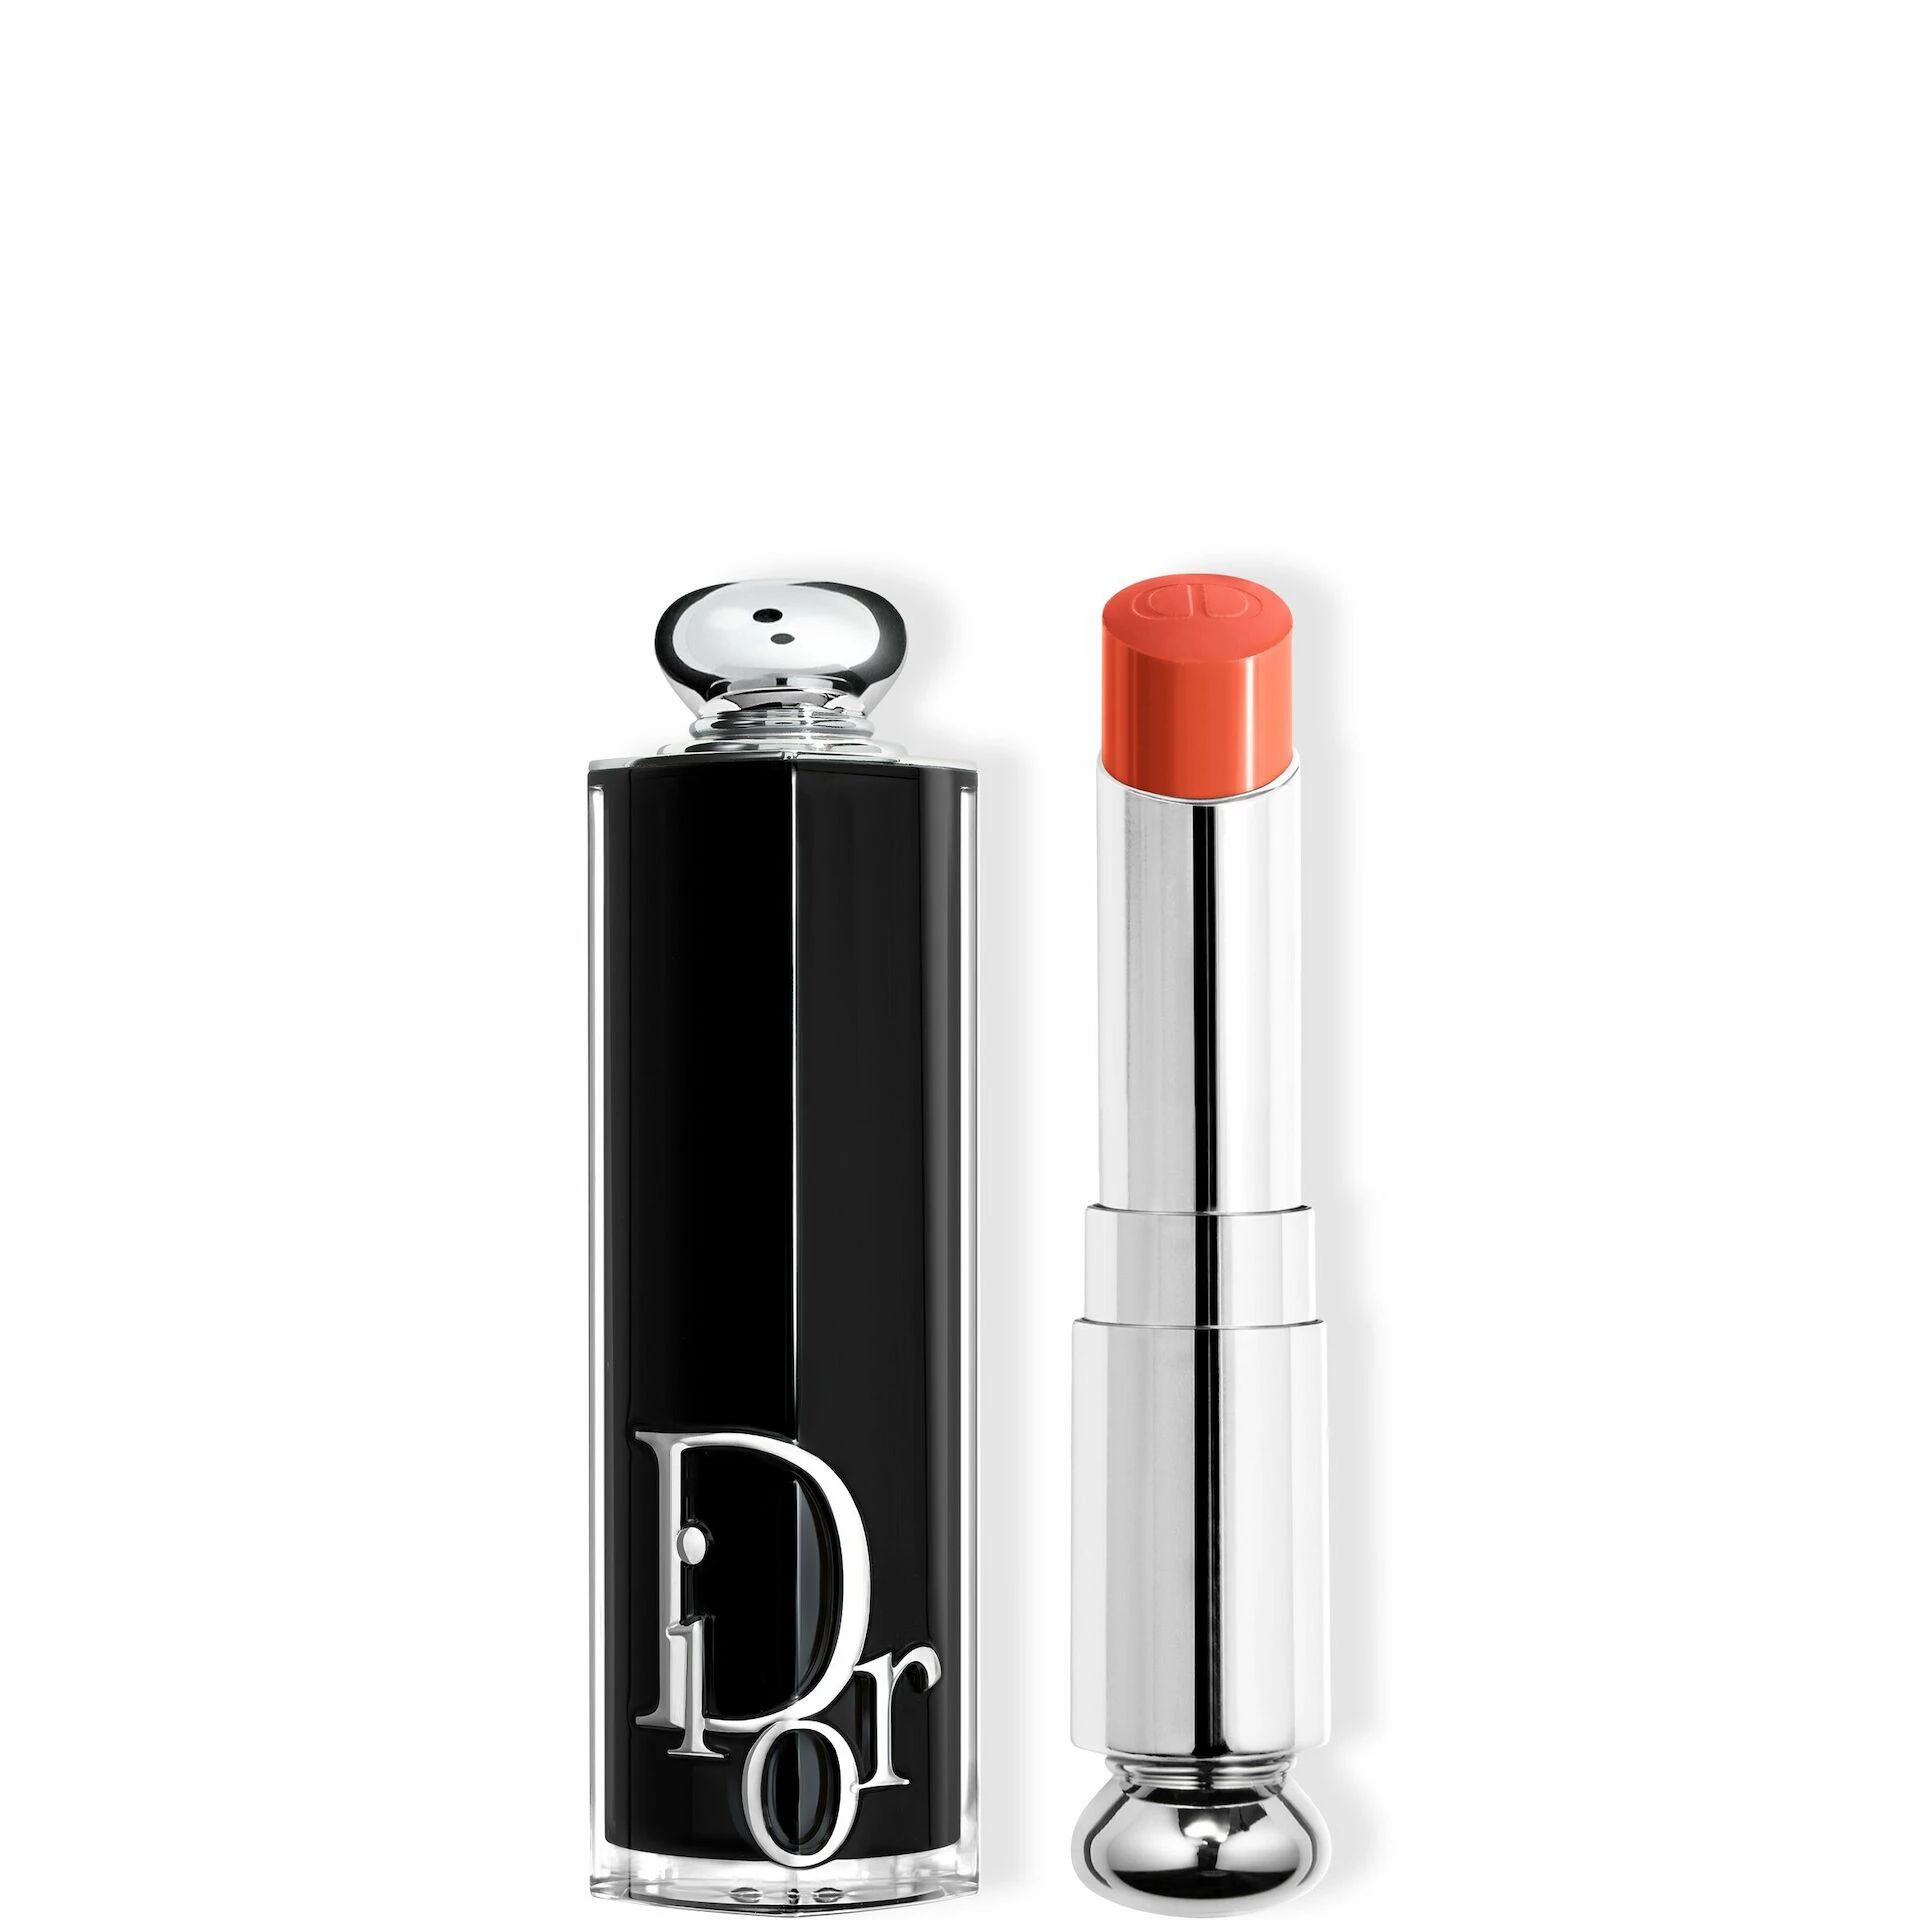 Помада для губ Dior Addict Refillable Coral Bayadere, №659, 3,5 г помада для губ dior addict refillable глянцевая тон 841 caro 3 2 г